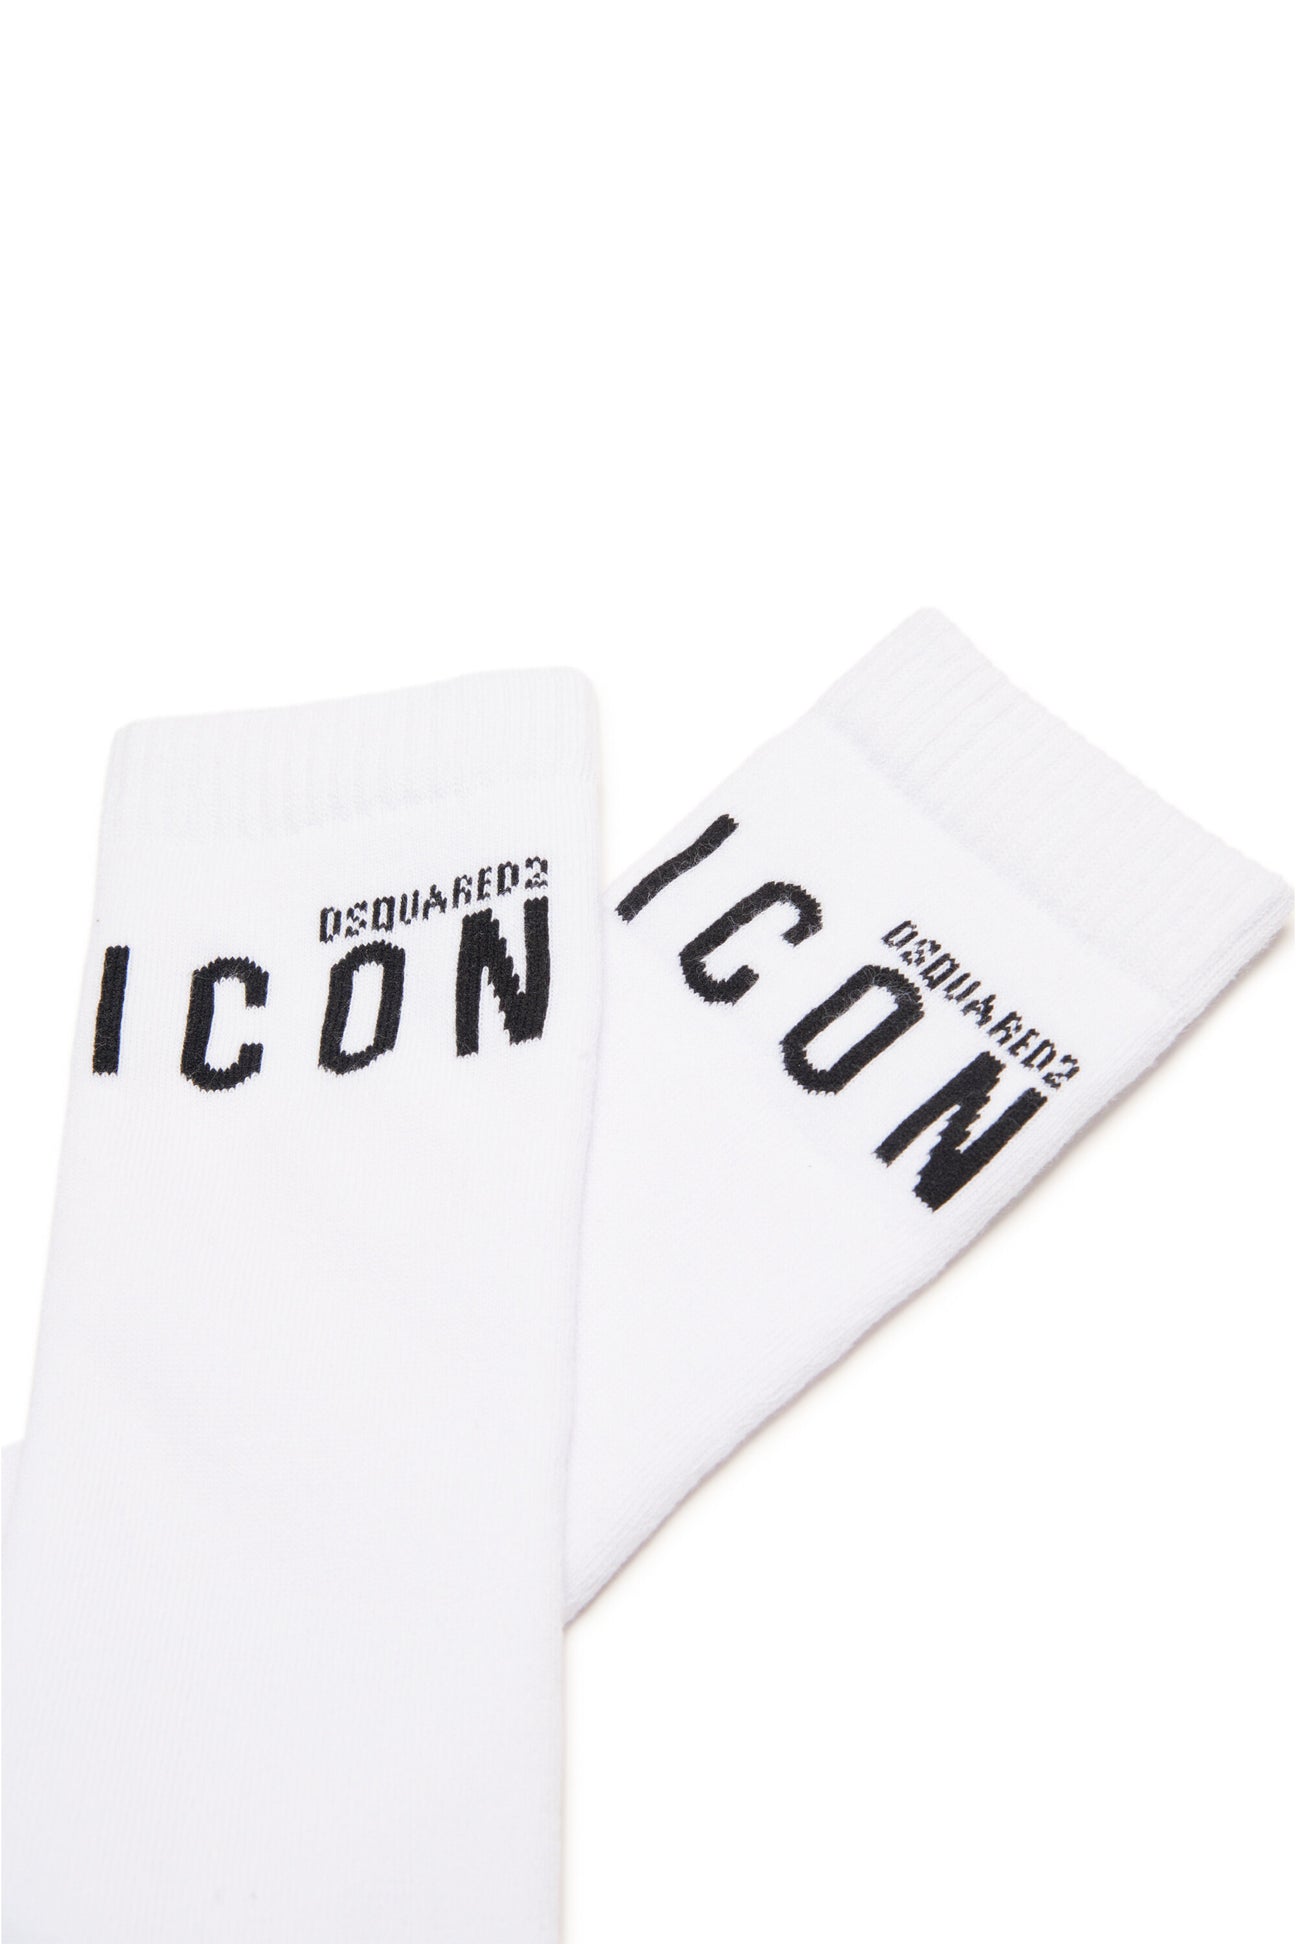 Calzini in cotone con logo ICON Calzini in cotone con logo ICON